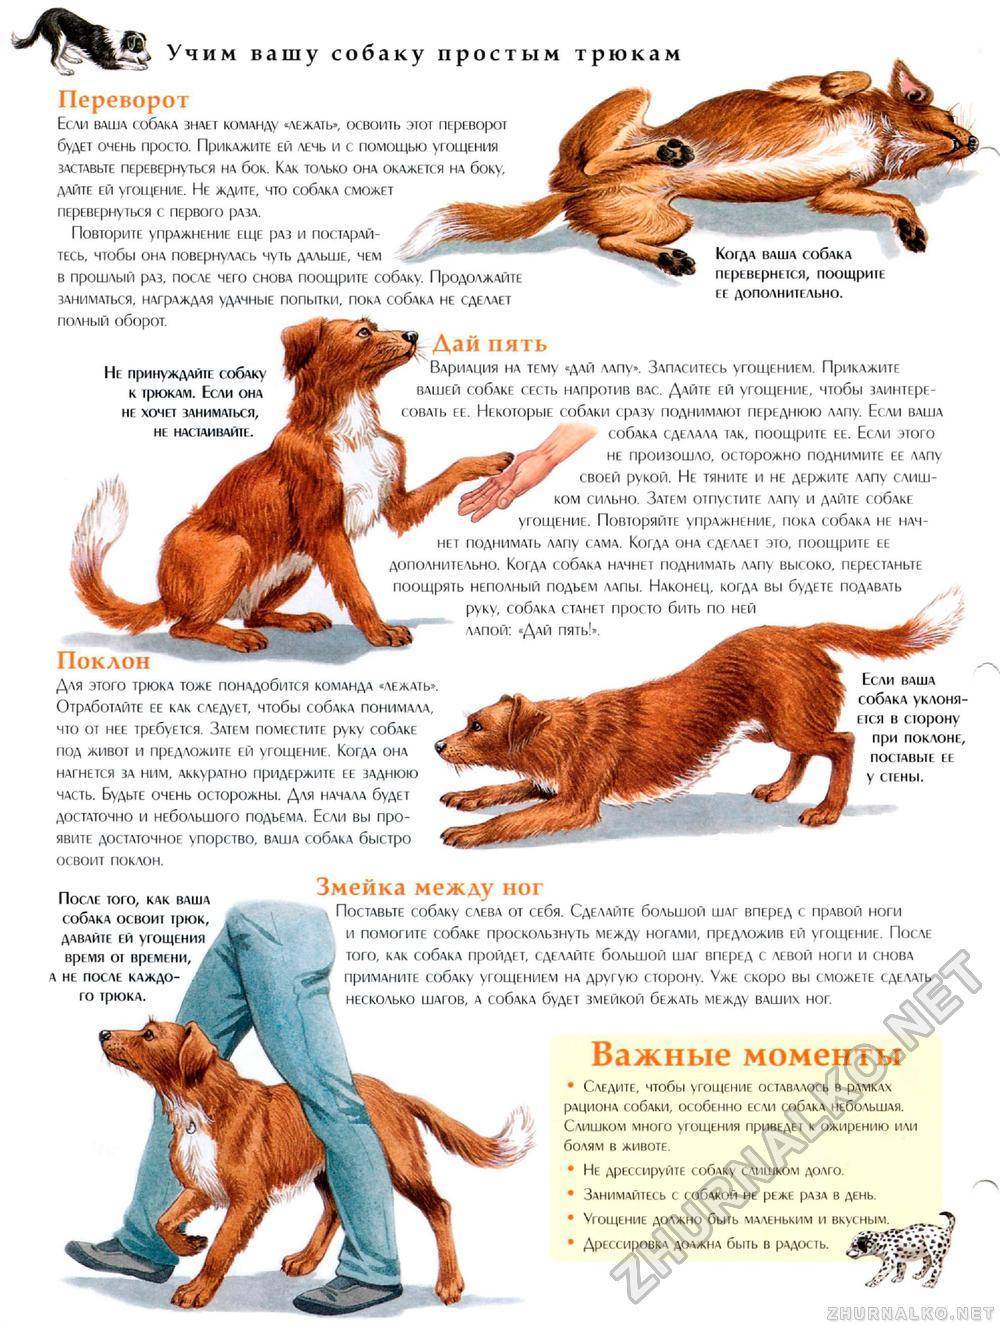 Как научить собаку команде «апорт» (апортировке) правильно? - petstory.ru